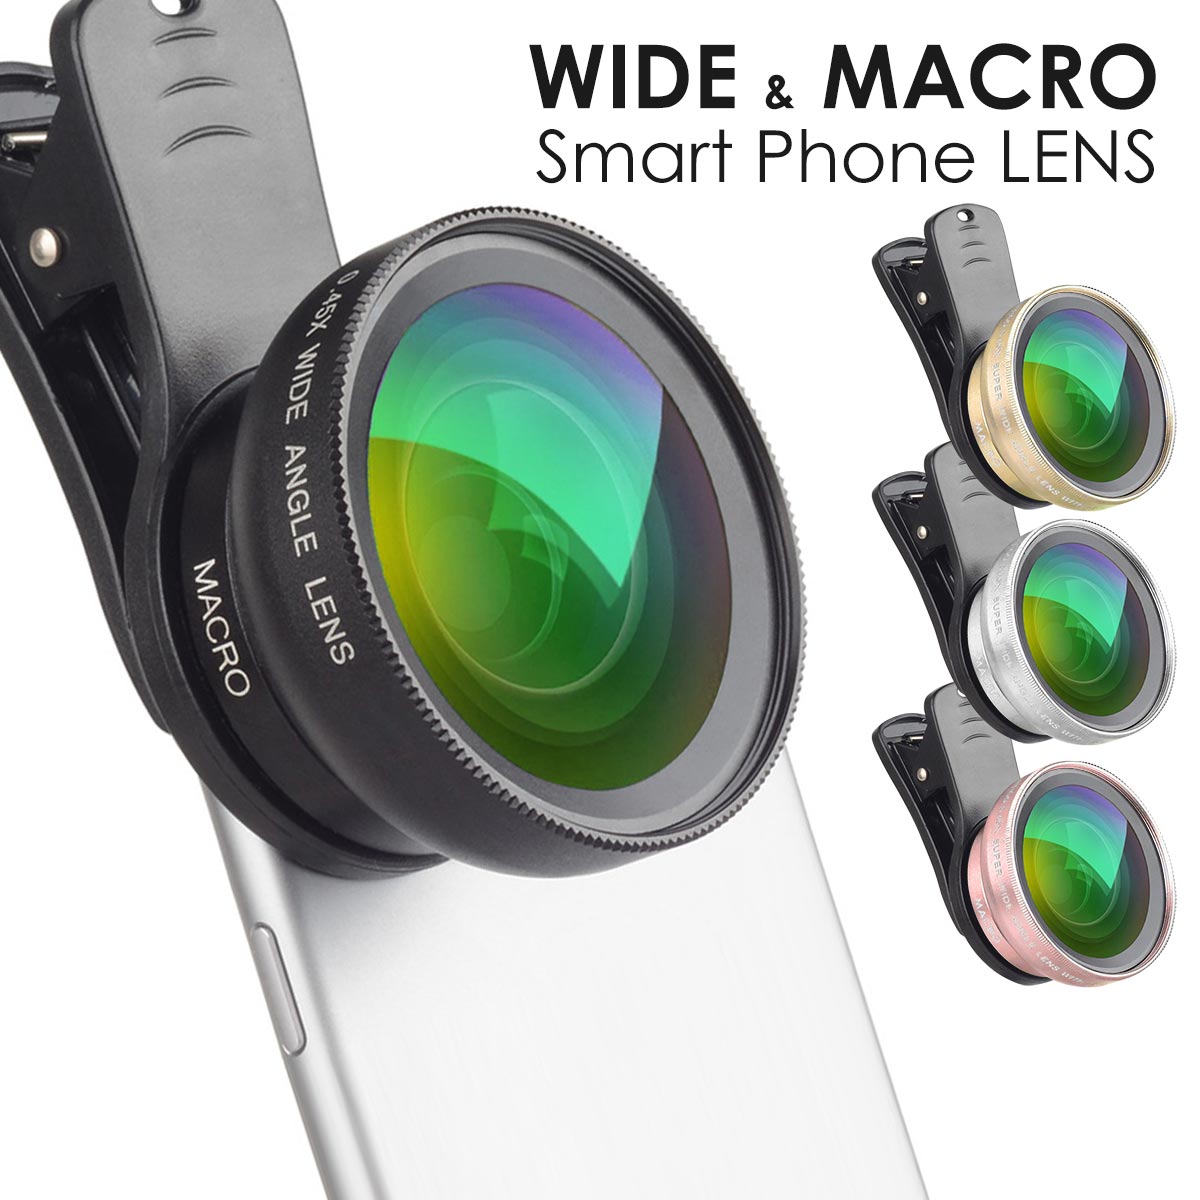 スマホカメラ レンズ スマホ用カメラレンズ 望遠 広角 マクロ レンズ 拡張 おすすめ 接写レンズ コスパ 最強 iphone Android スマホ 10代 20代 30代 40代 50代 プレゼント ギフト